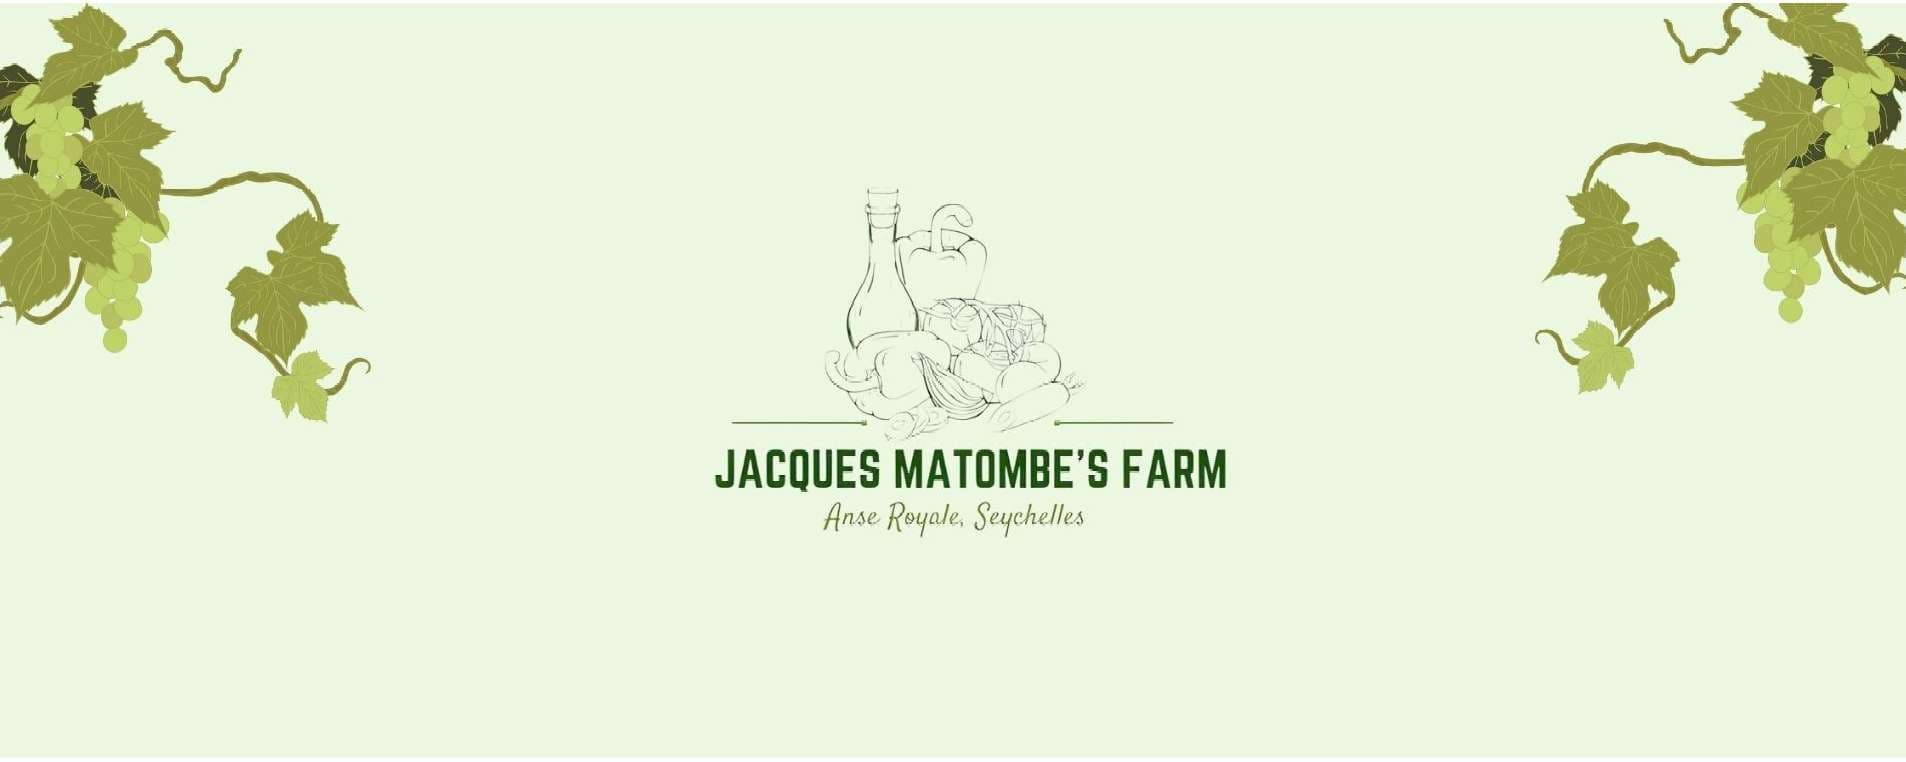 Jacques Matombe's Farm